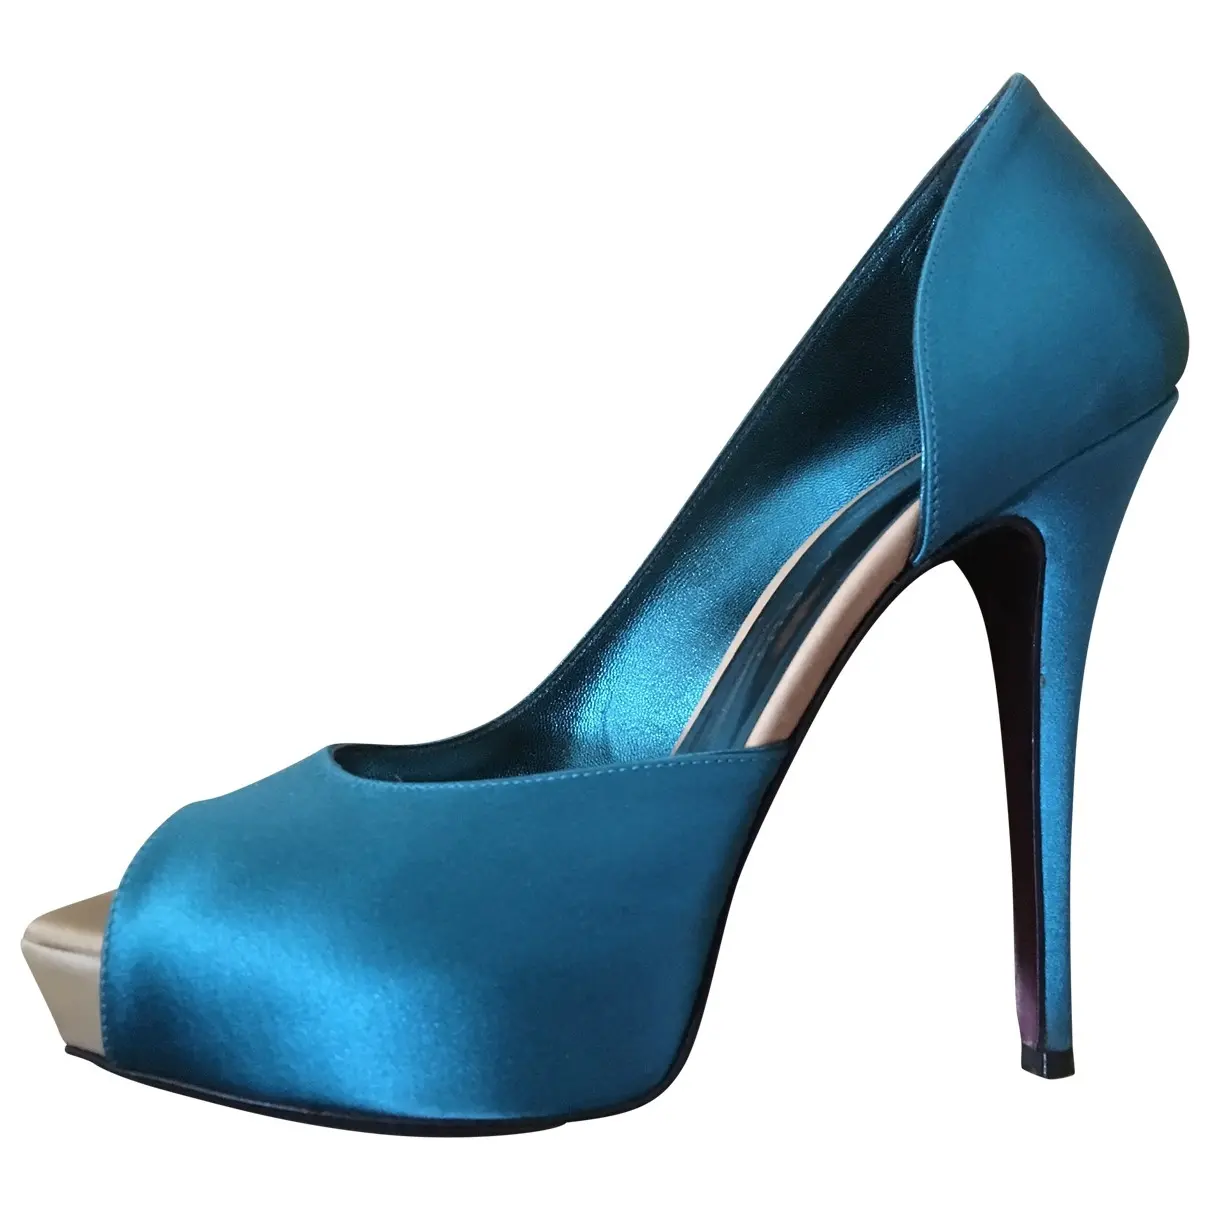 Cloth heels Barbara Bui